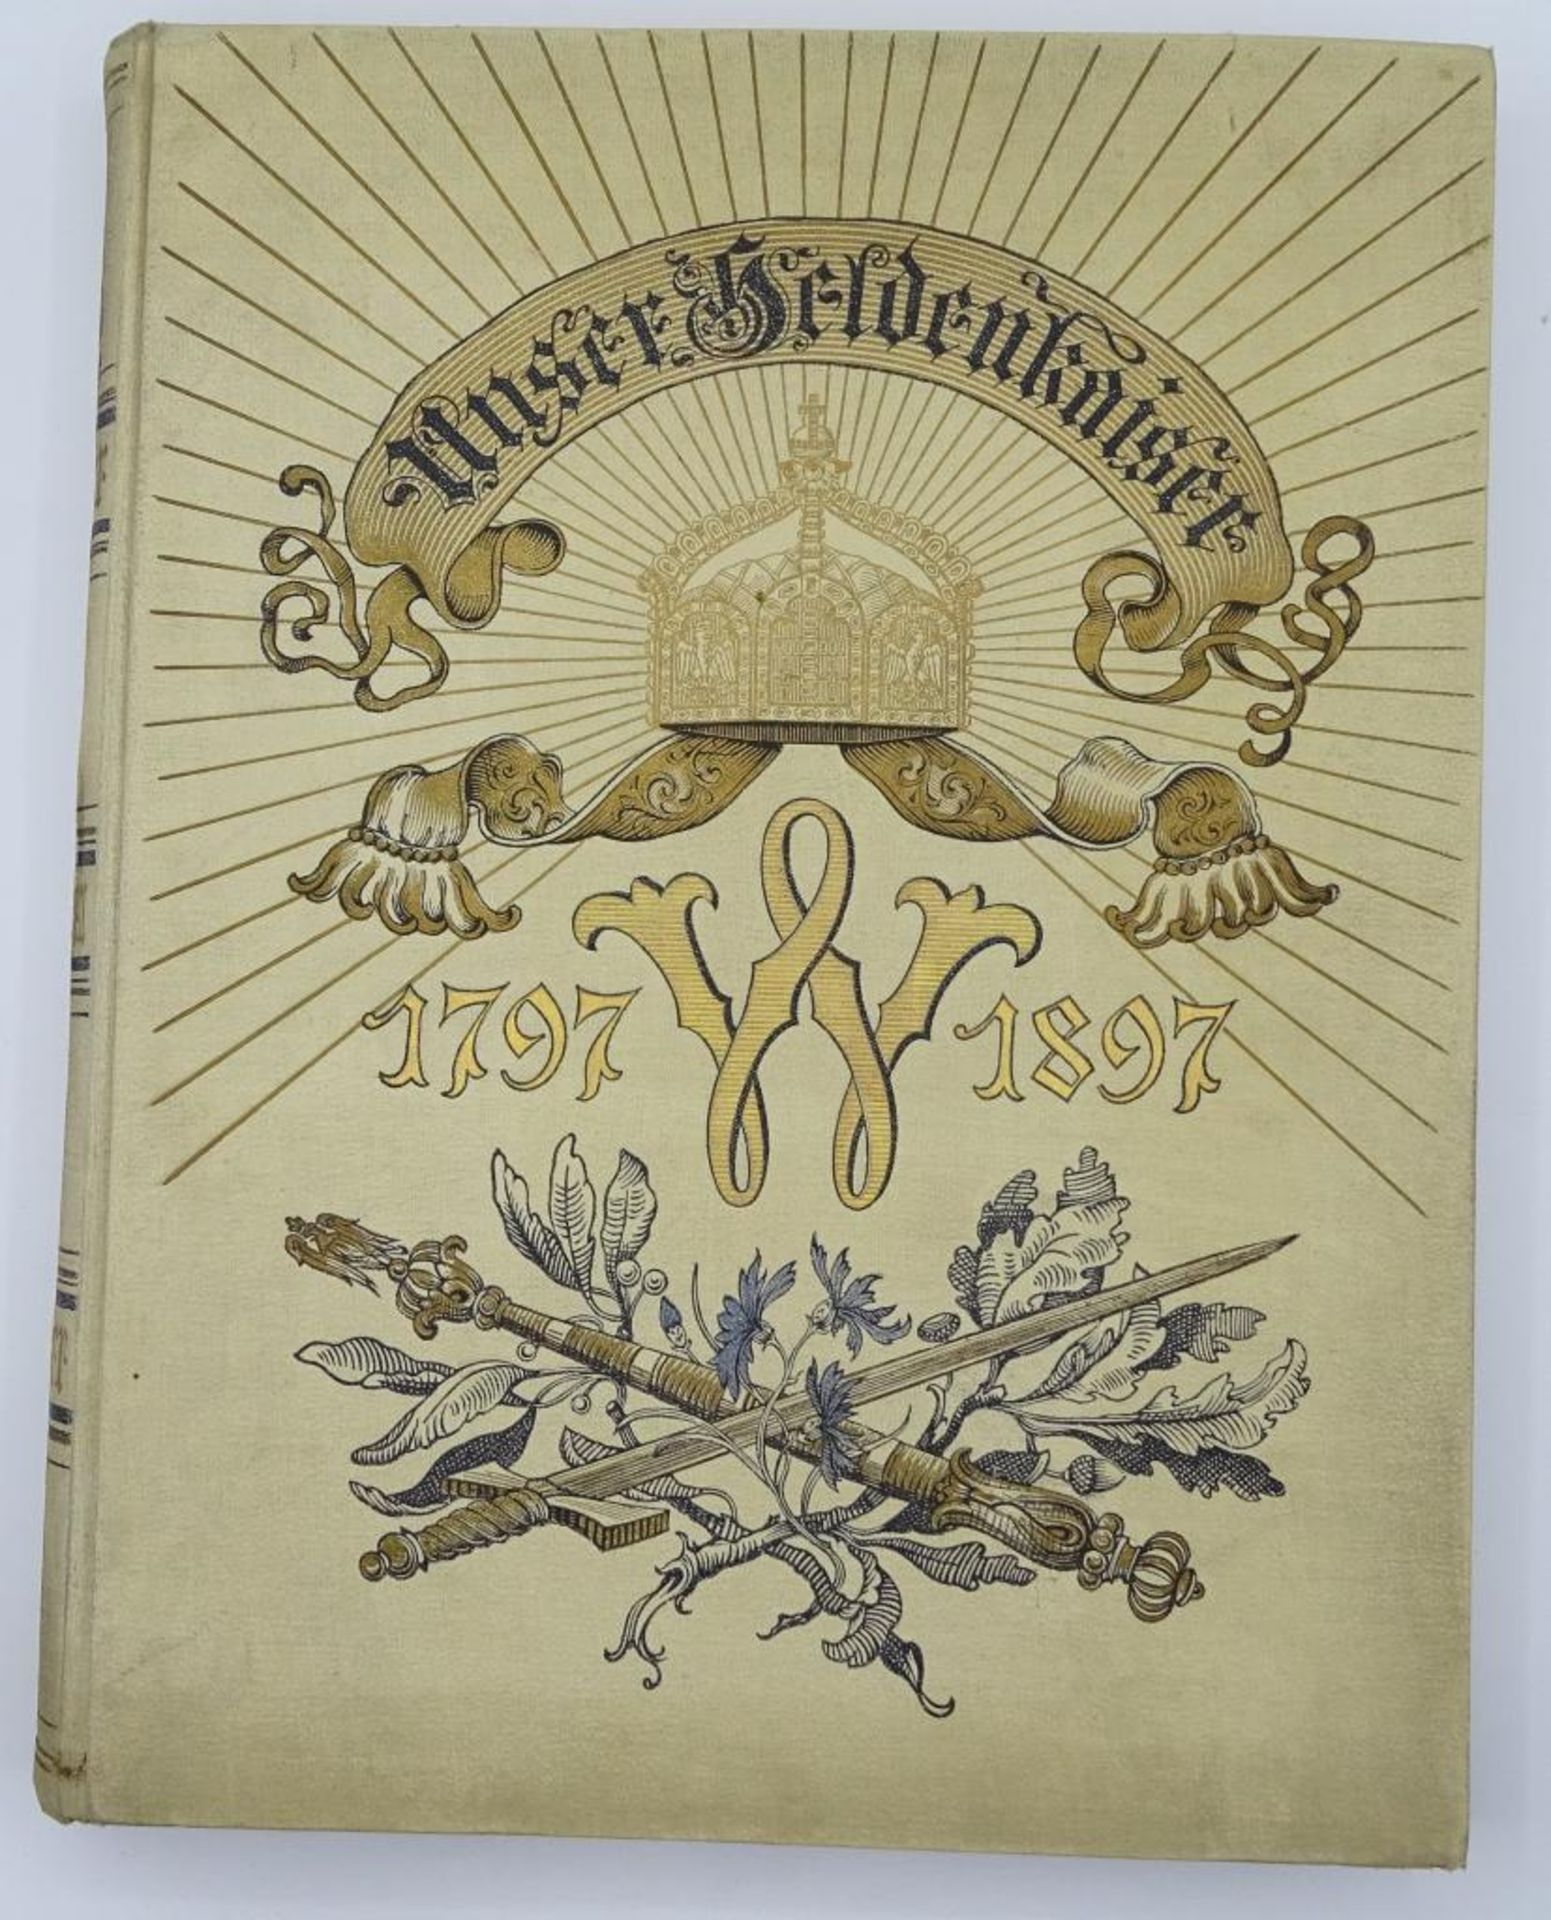 Unser Heldenkaiser,Festschrift zum 100 jährigen Geburtstag Kaiser Wilhelms des Großen,reich